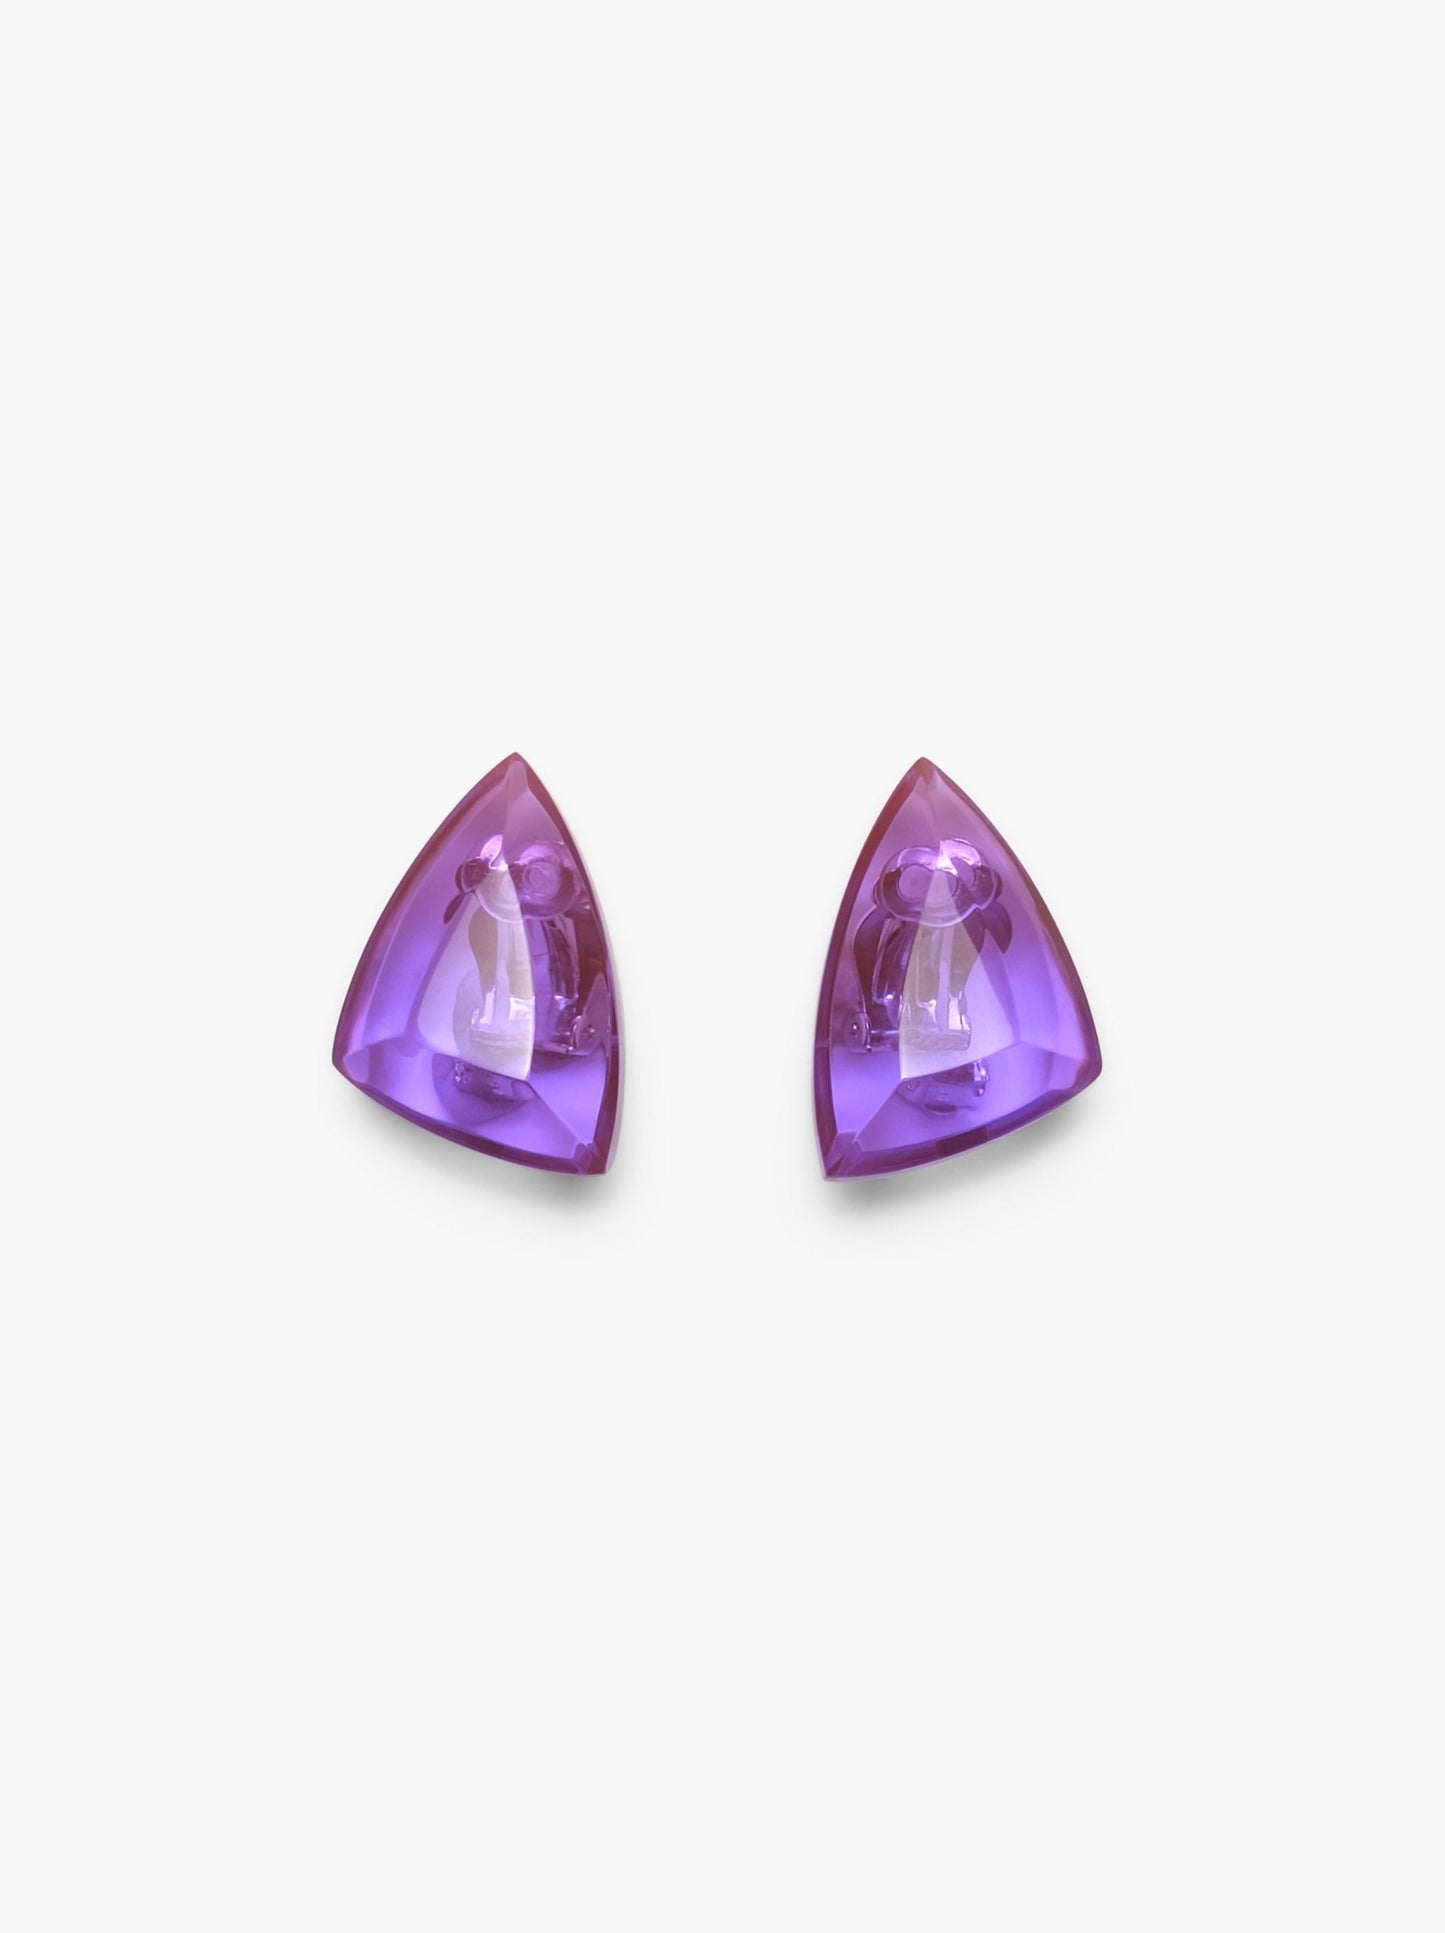 Wikka earclips purple